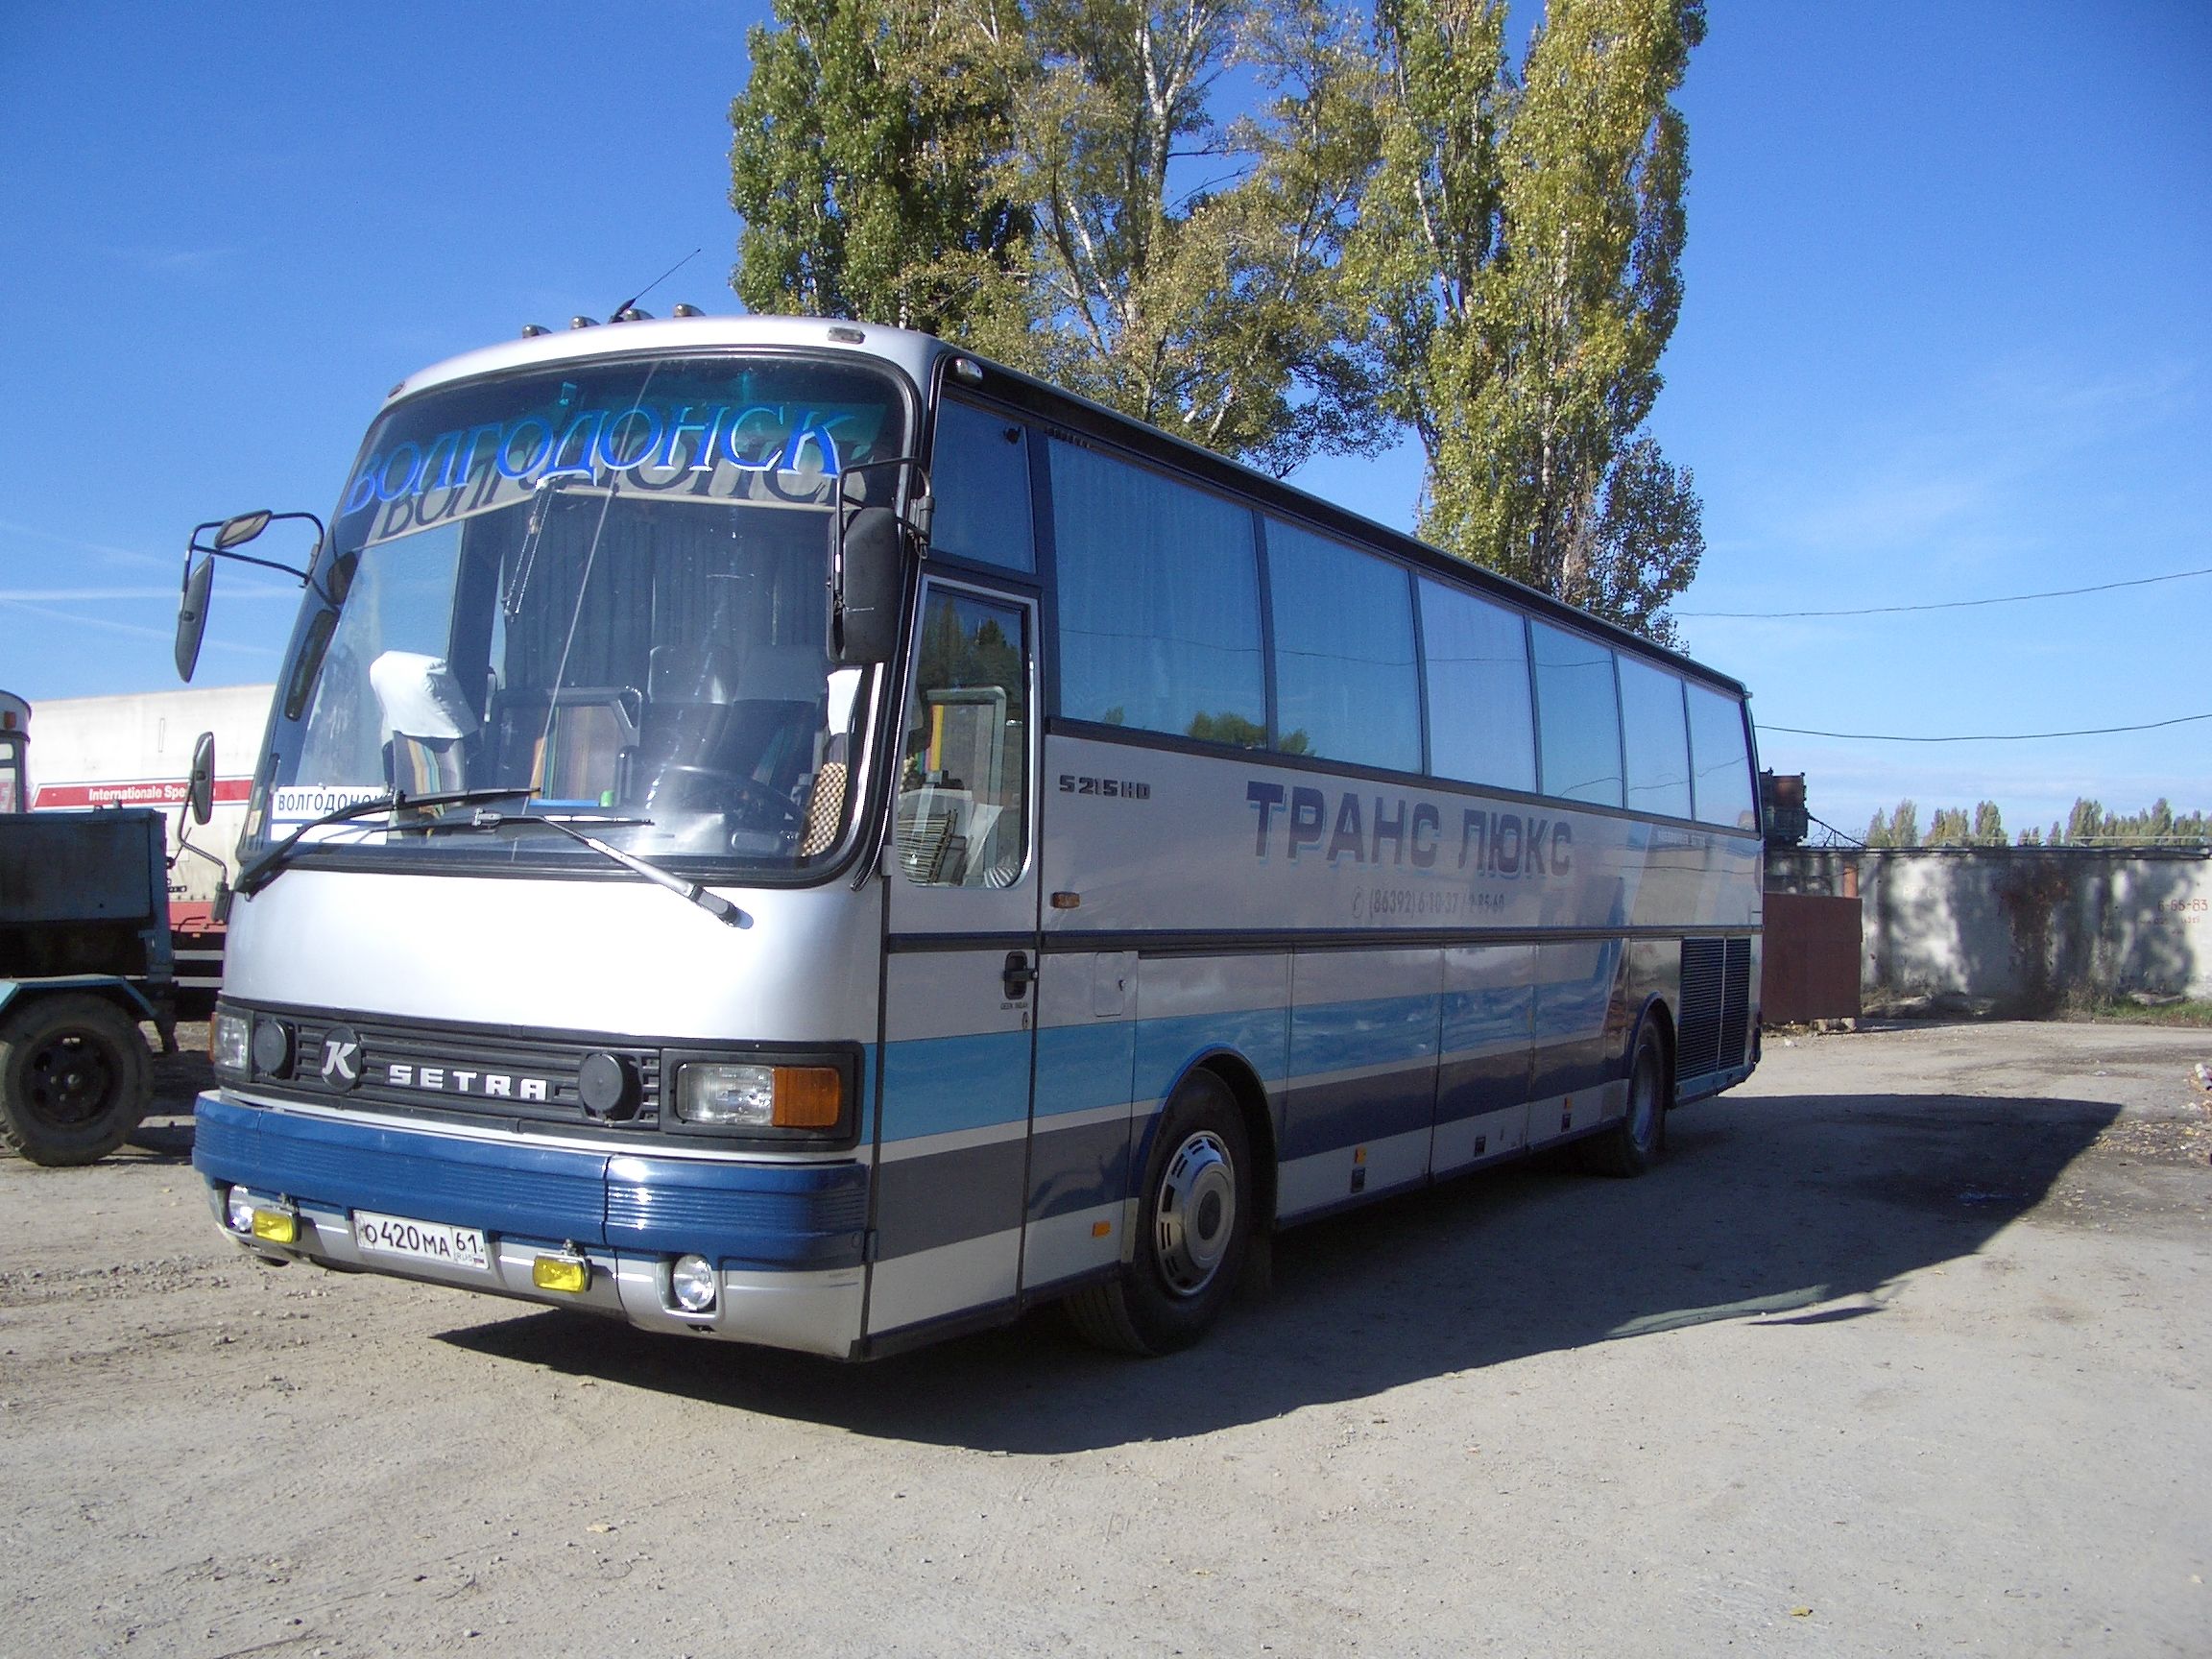 translux bus